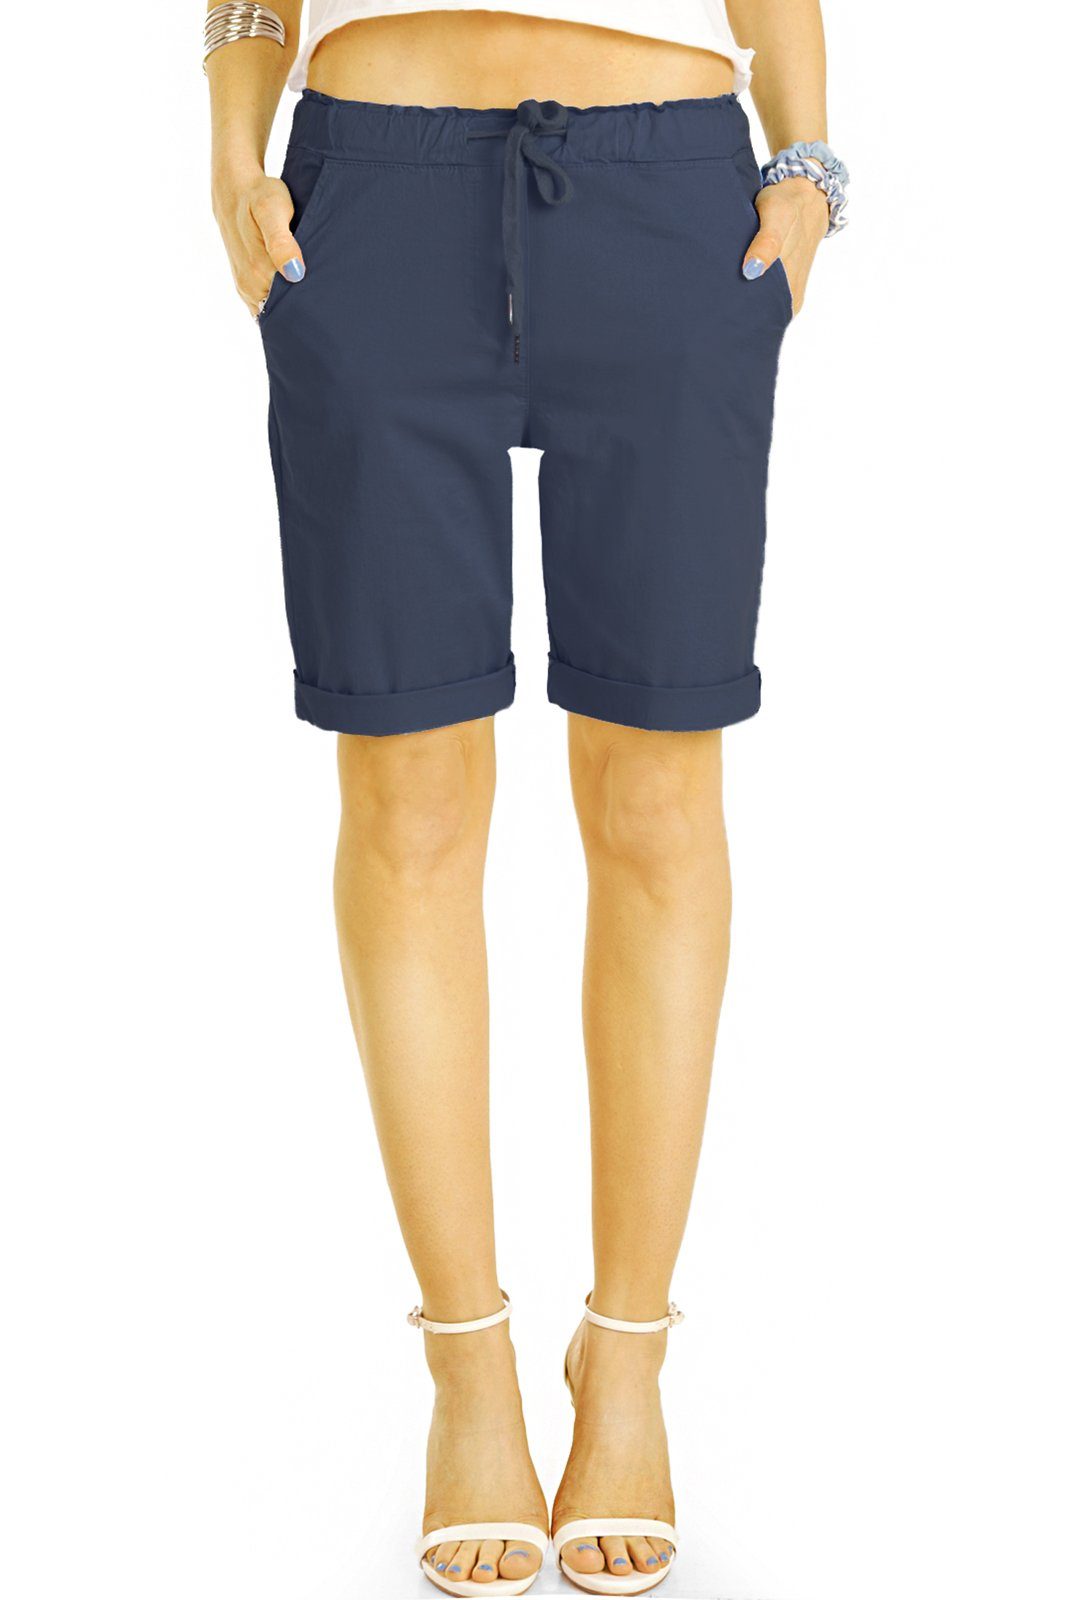 be styled Shorts Chino Stoff Shorts - Kurze lockere Hosen mit Kordelzug - Damen - h28a mit Kordelzug, in Unifarben, mit elastischem Bund dunkelblau